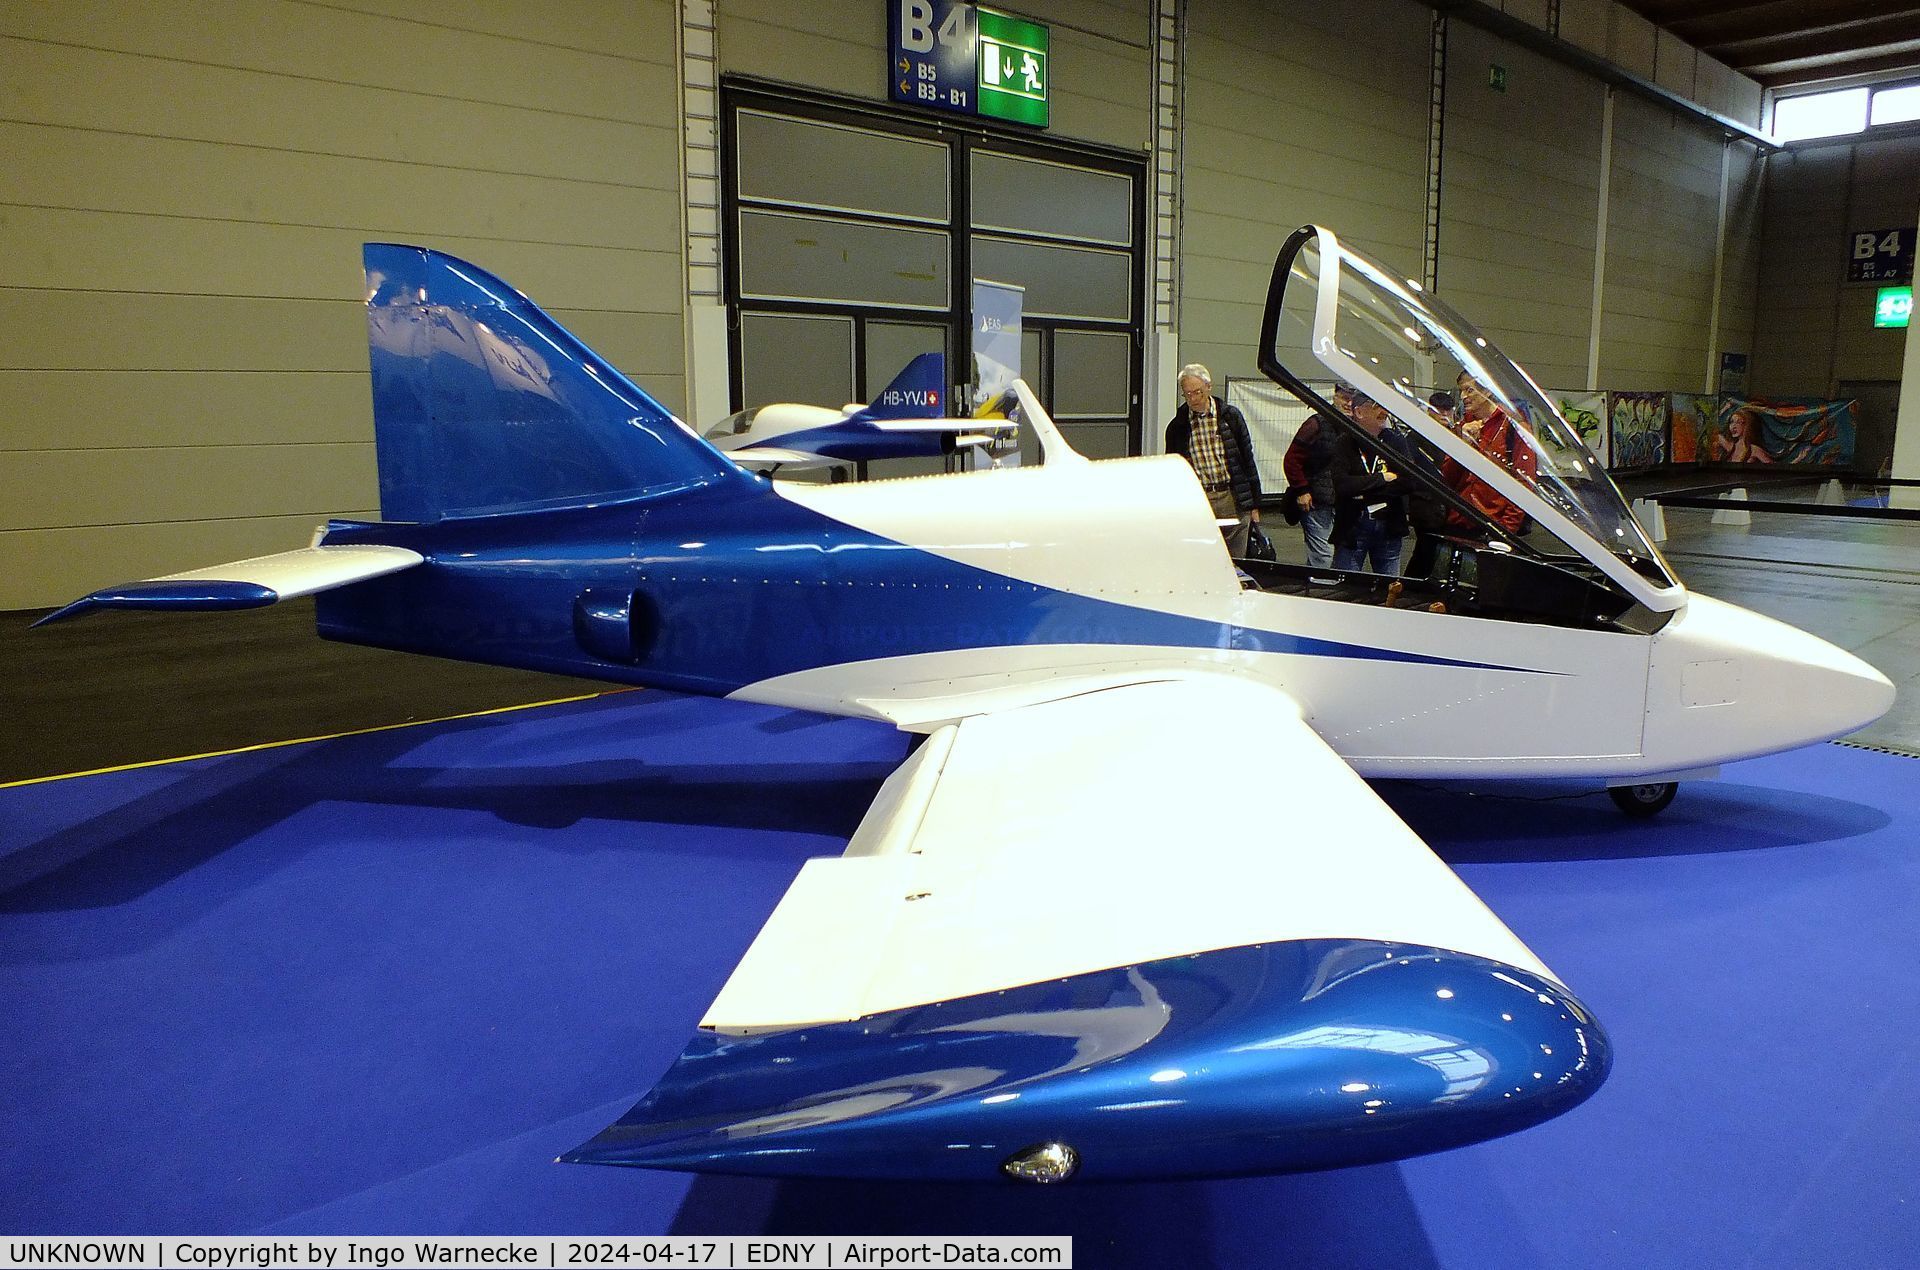 UNKNOWN, 2024 Villiger / Straub / Dünkli Traveller Jet Prototype C/N 01, Villiger / Straub / Dünkli Traveller Jet pre-prototype at the AERO 2024, Friedrichshafen